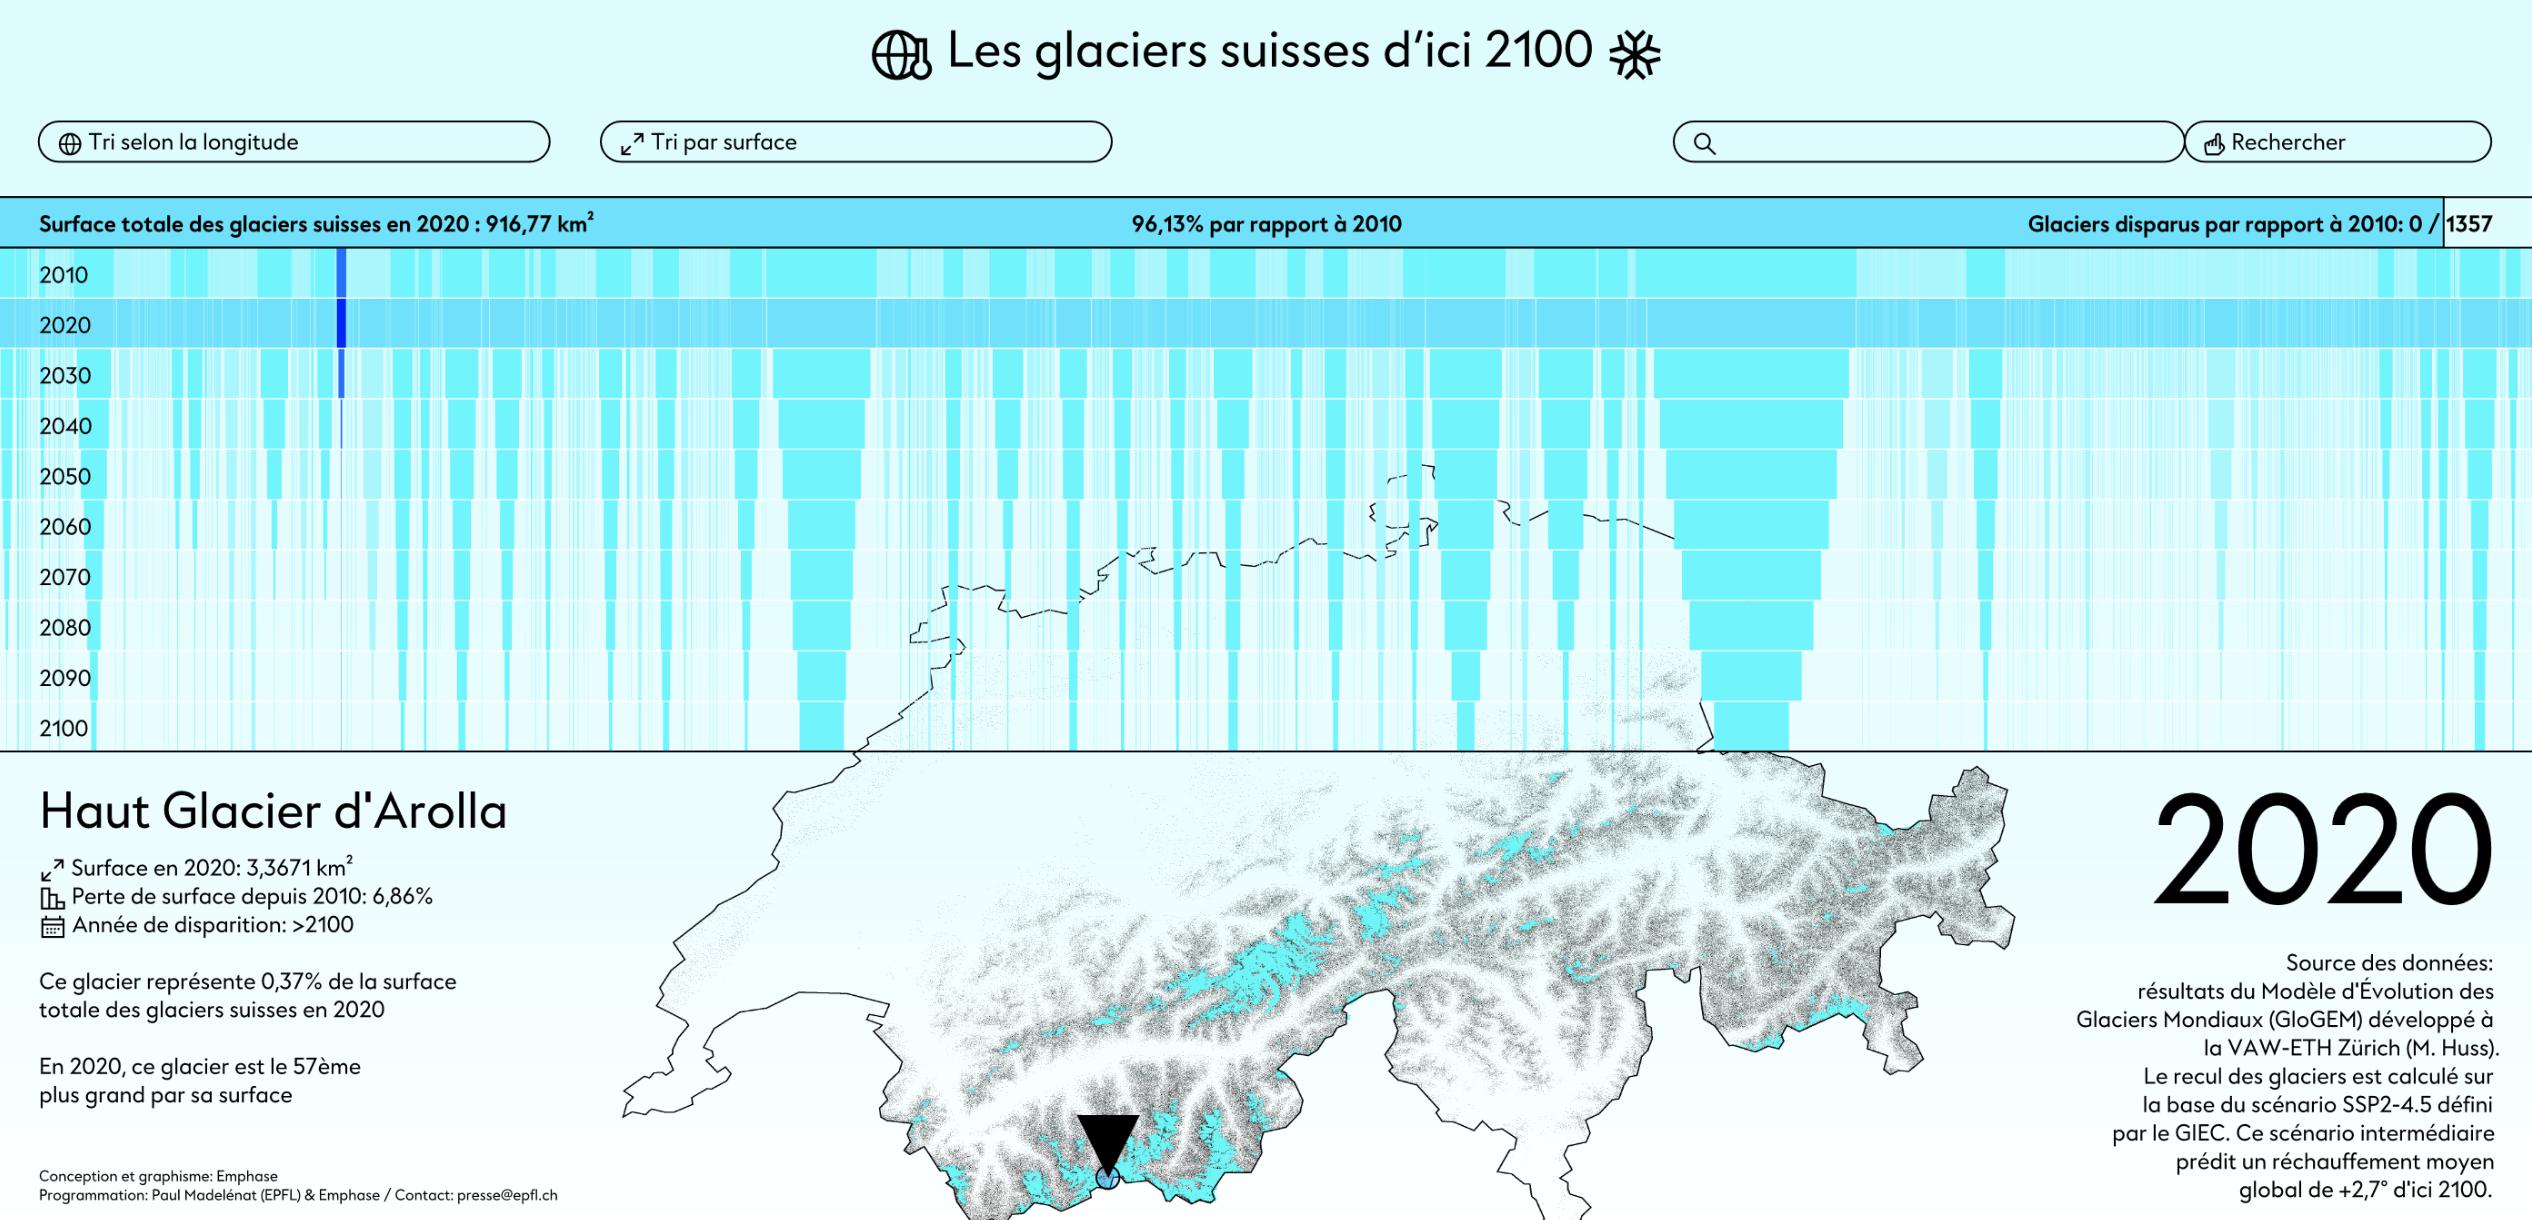 Une infographie représentant l'étendue des glaciers suisses d'ici 2100.